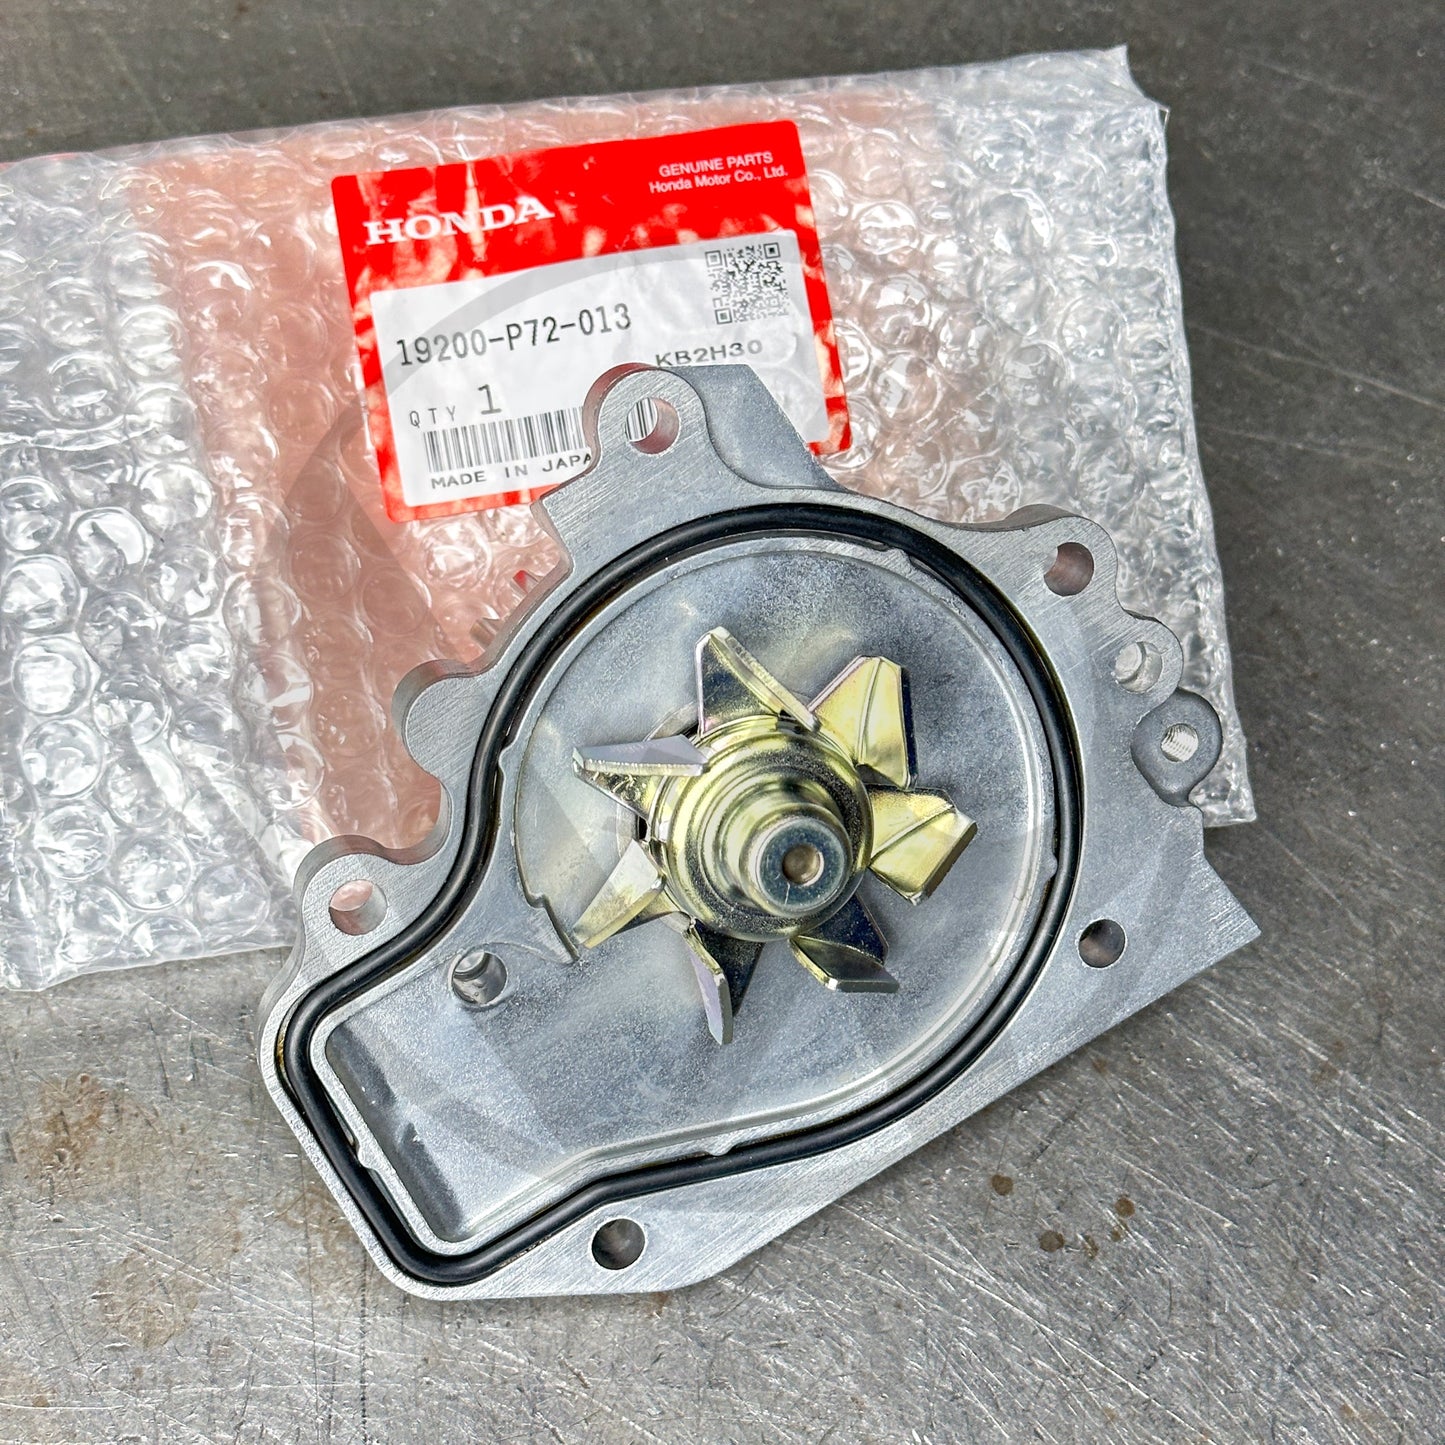 Gates Racing TRB Timing Belt / Honda OEM Water Pump Kit for Honda Acura B Series